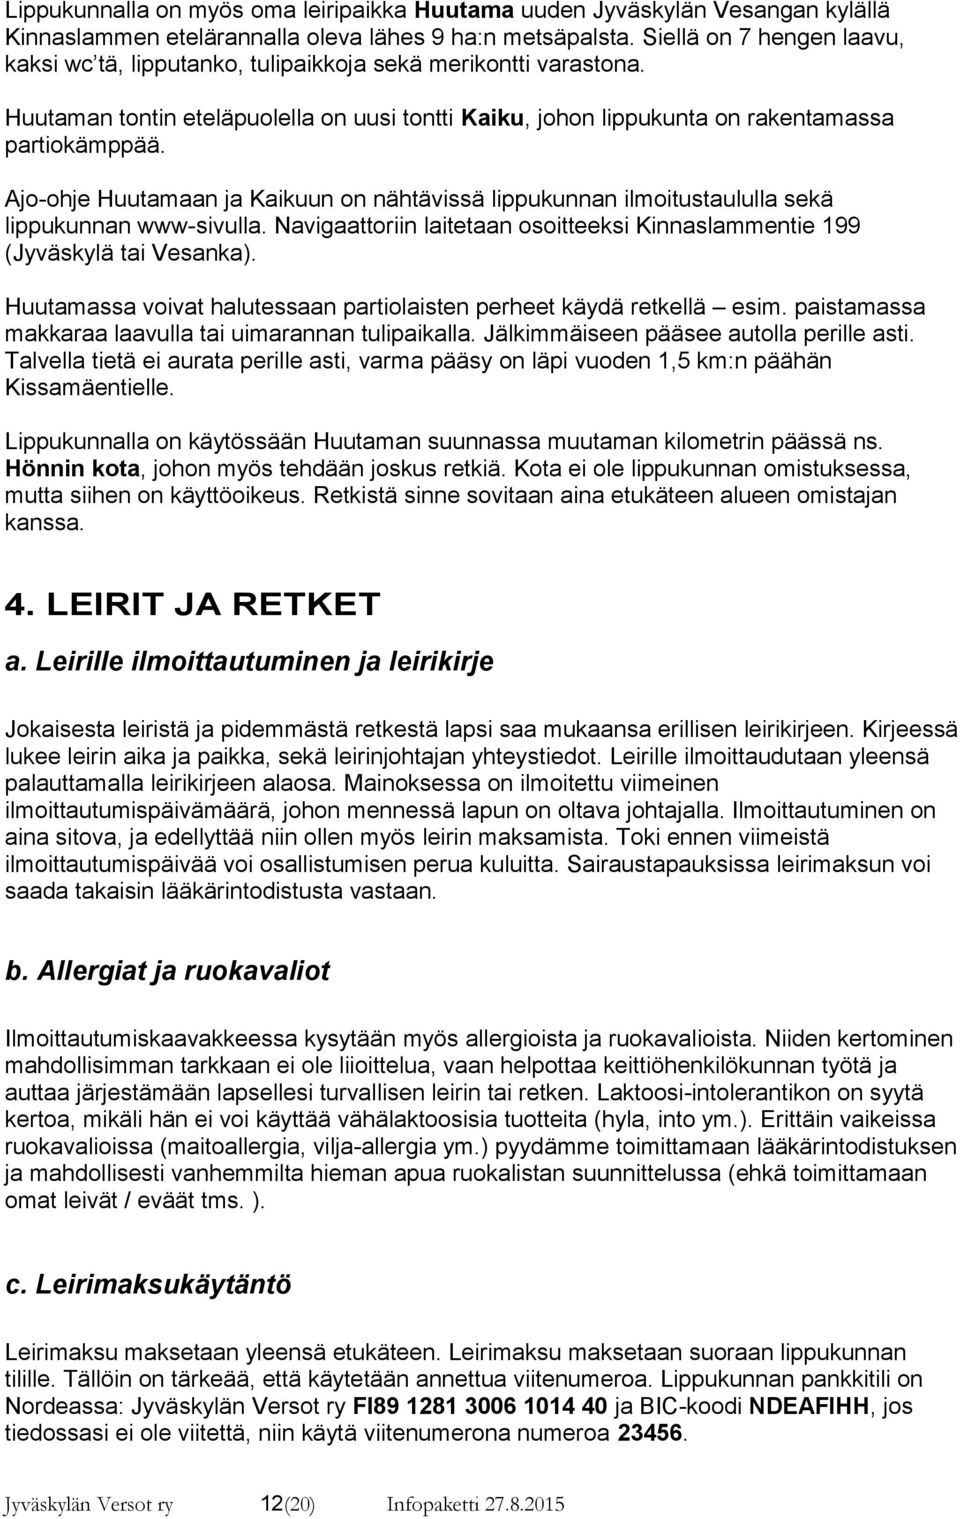 Ajo-ohje Huutamaan ja Kaikuun on nähtävissä lippukunnan ilmoitustaululla sekä lippukunnan www-sivulla. Navigaattoriin laitetaan osoitteeksi Kinnaslammentie 199 (Jyväskylä tai Vesanka).